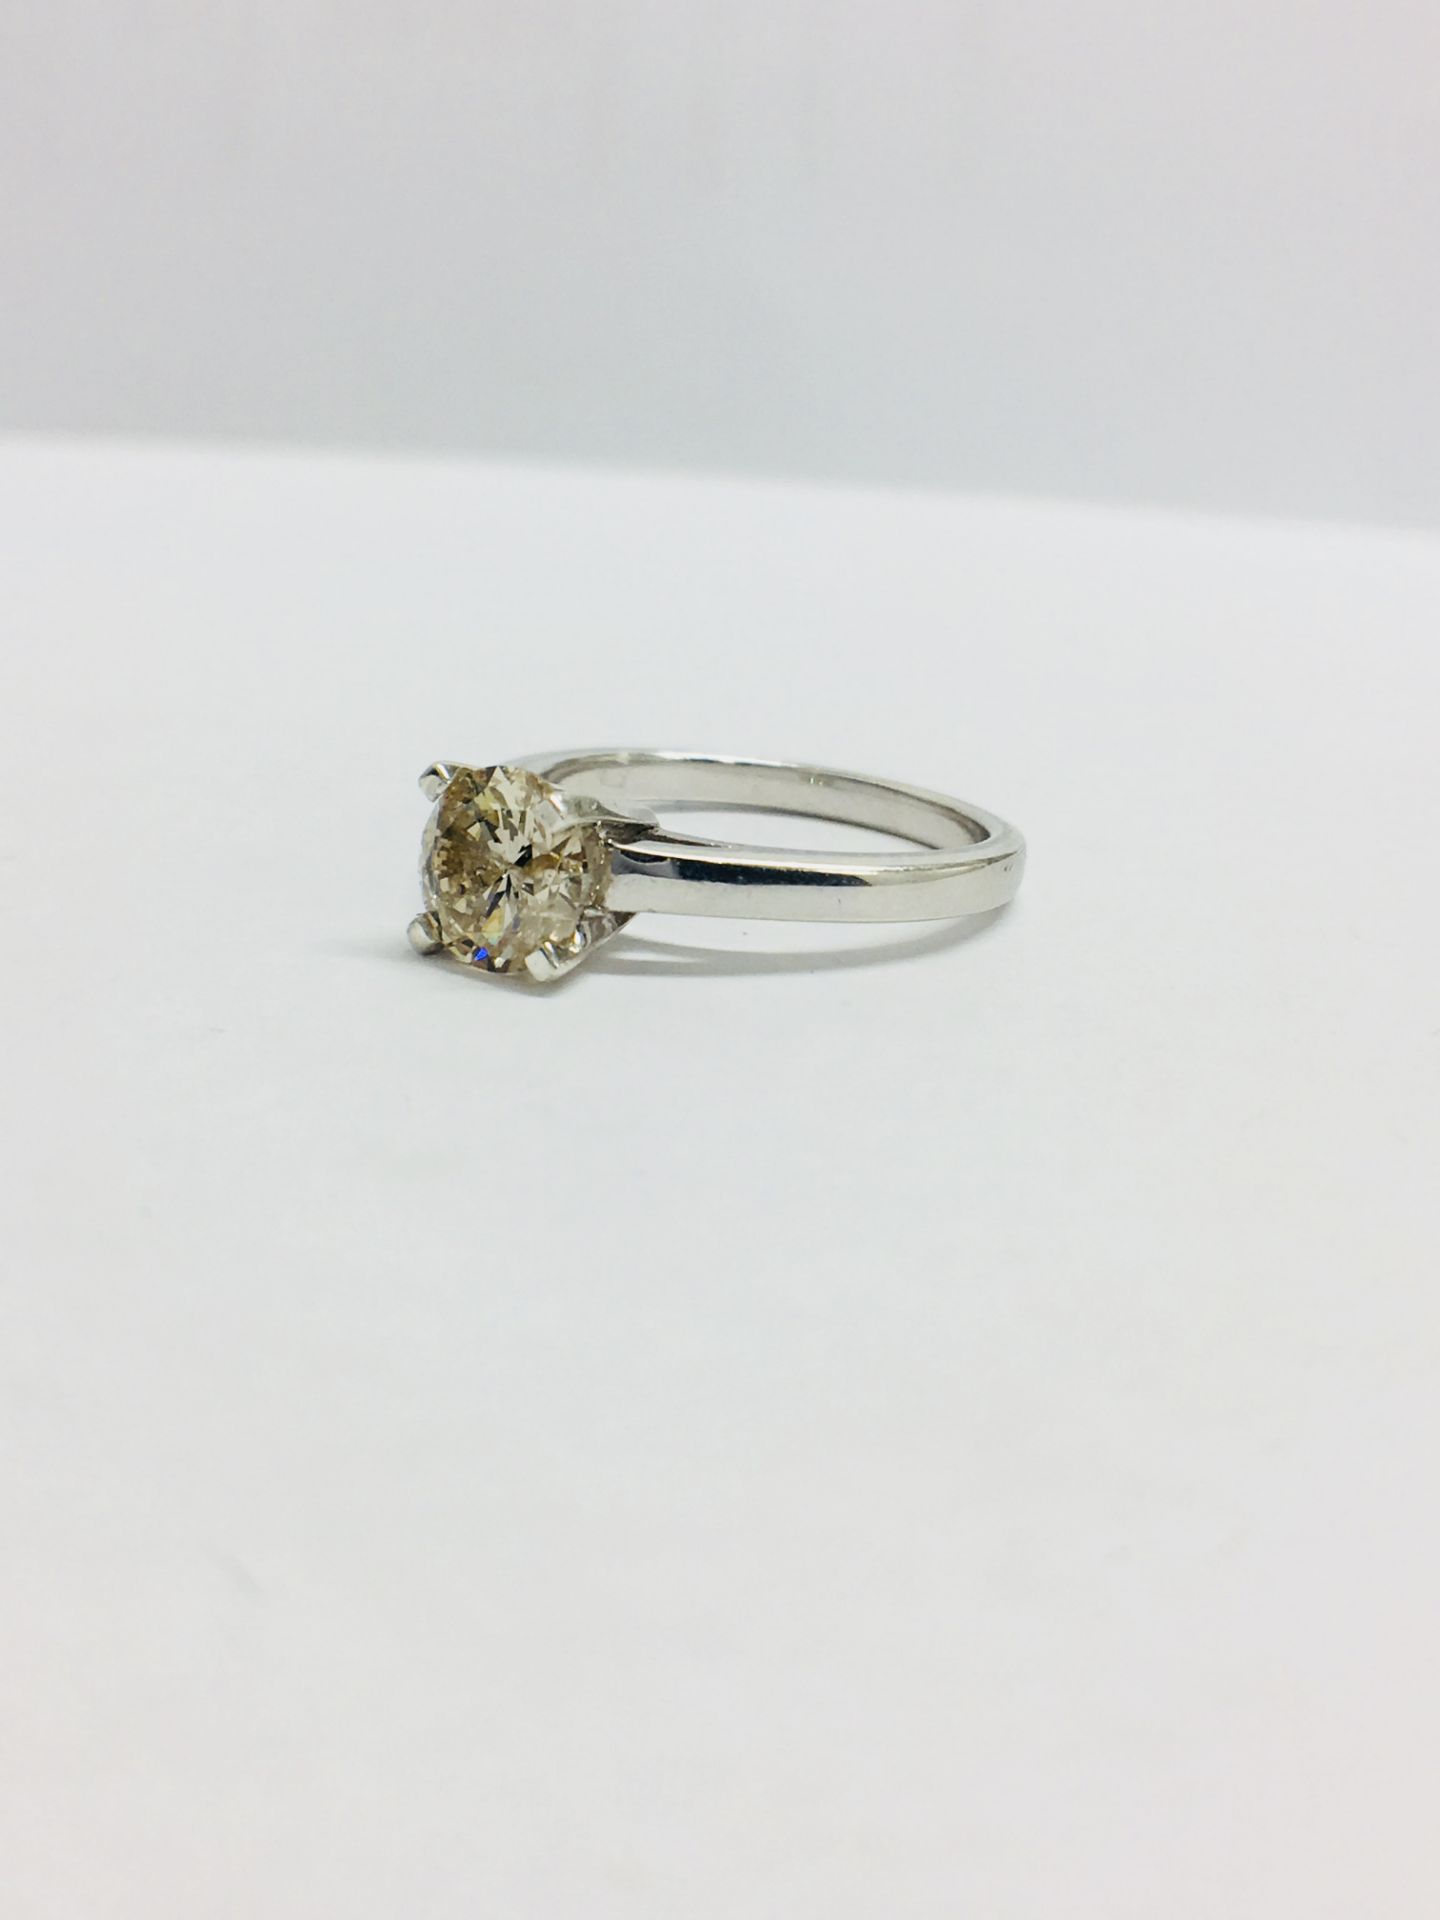 1.00Ct Diamond Solitaire Ring Set In Platinum.